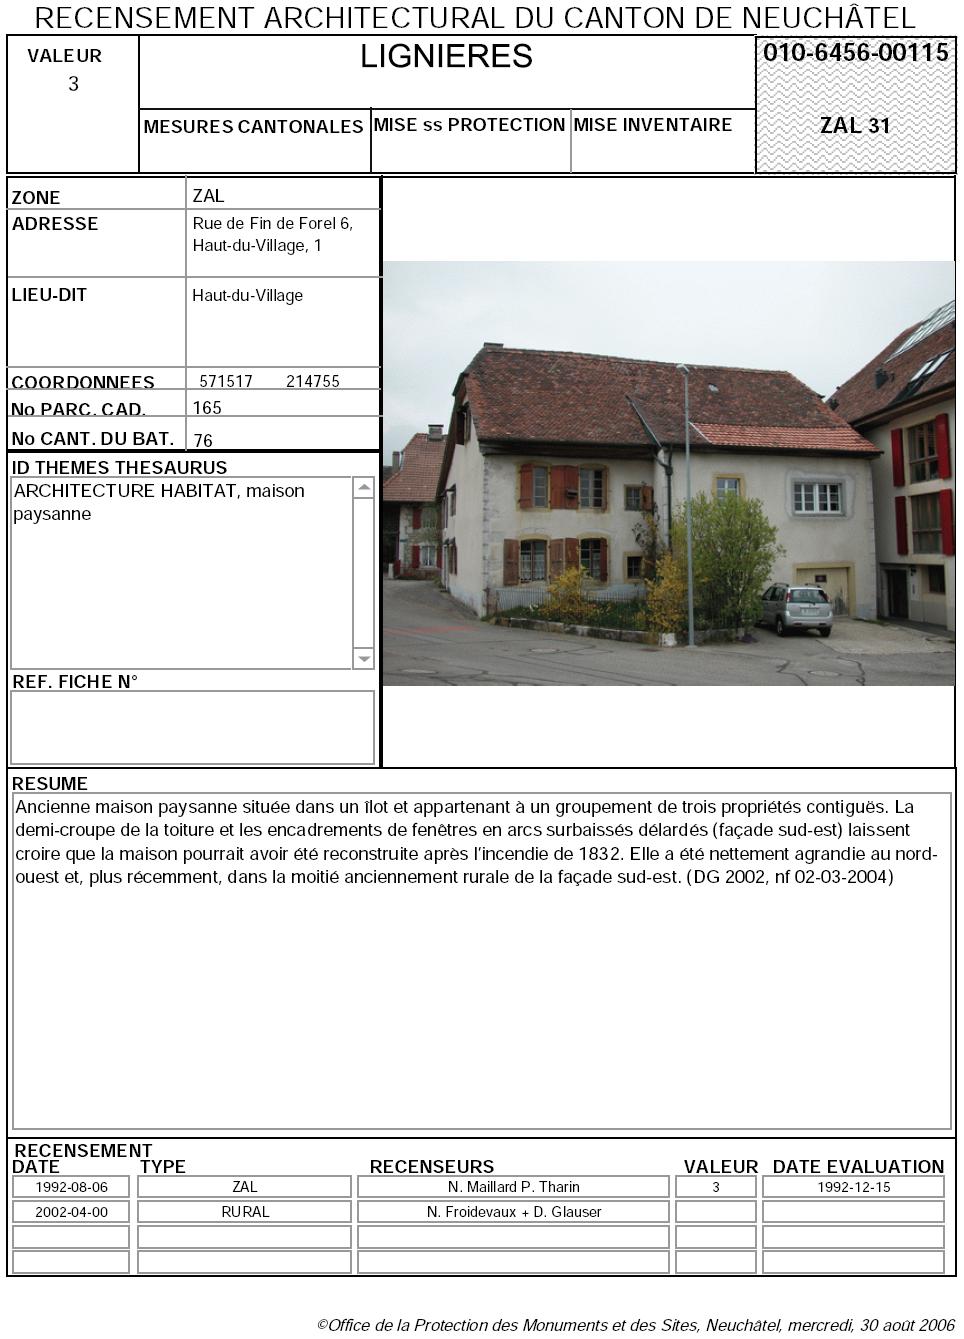 Recensement architectural du canton de Neuchâtel: Fiche 010-6456-00115